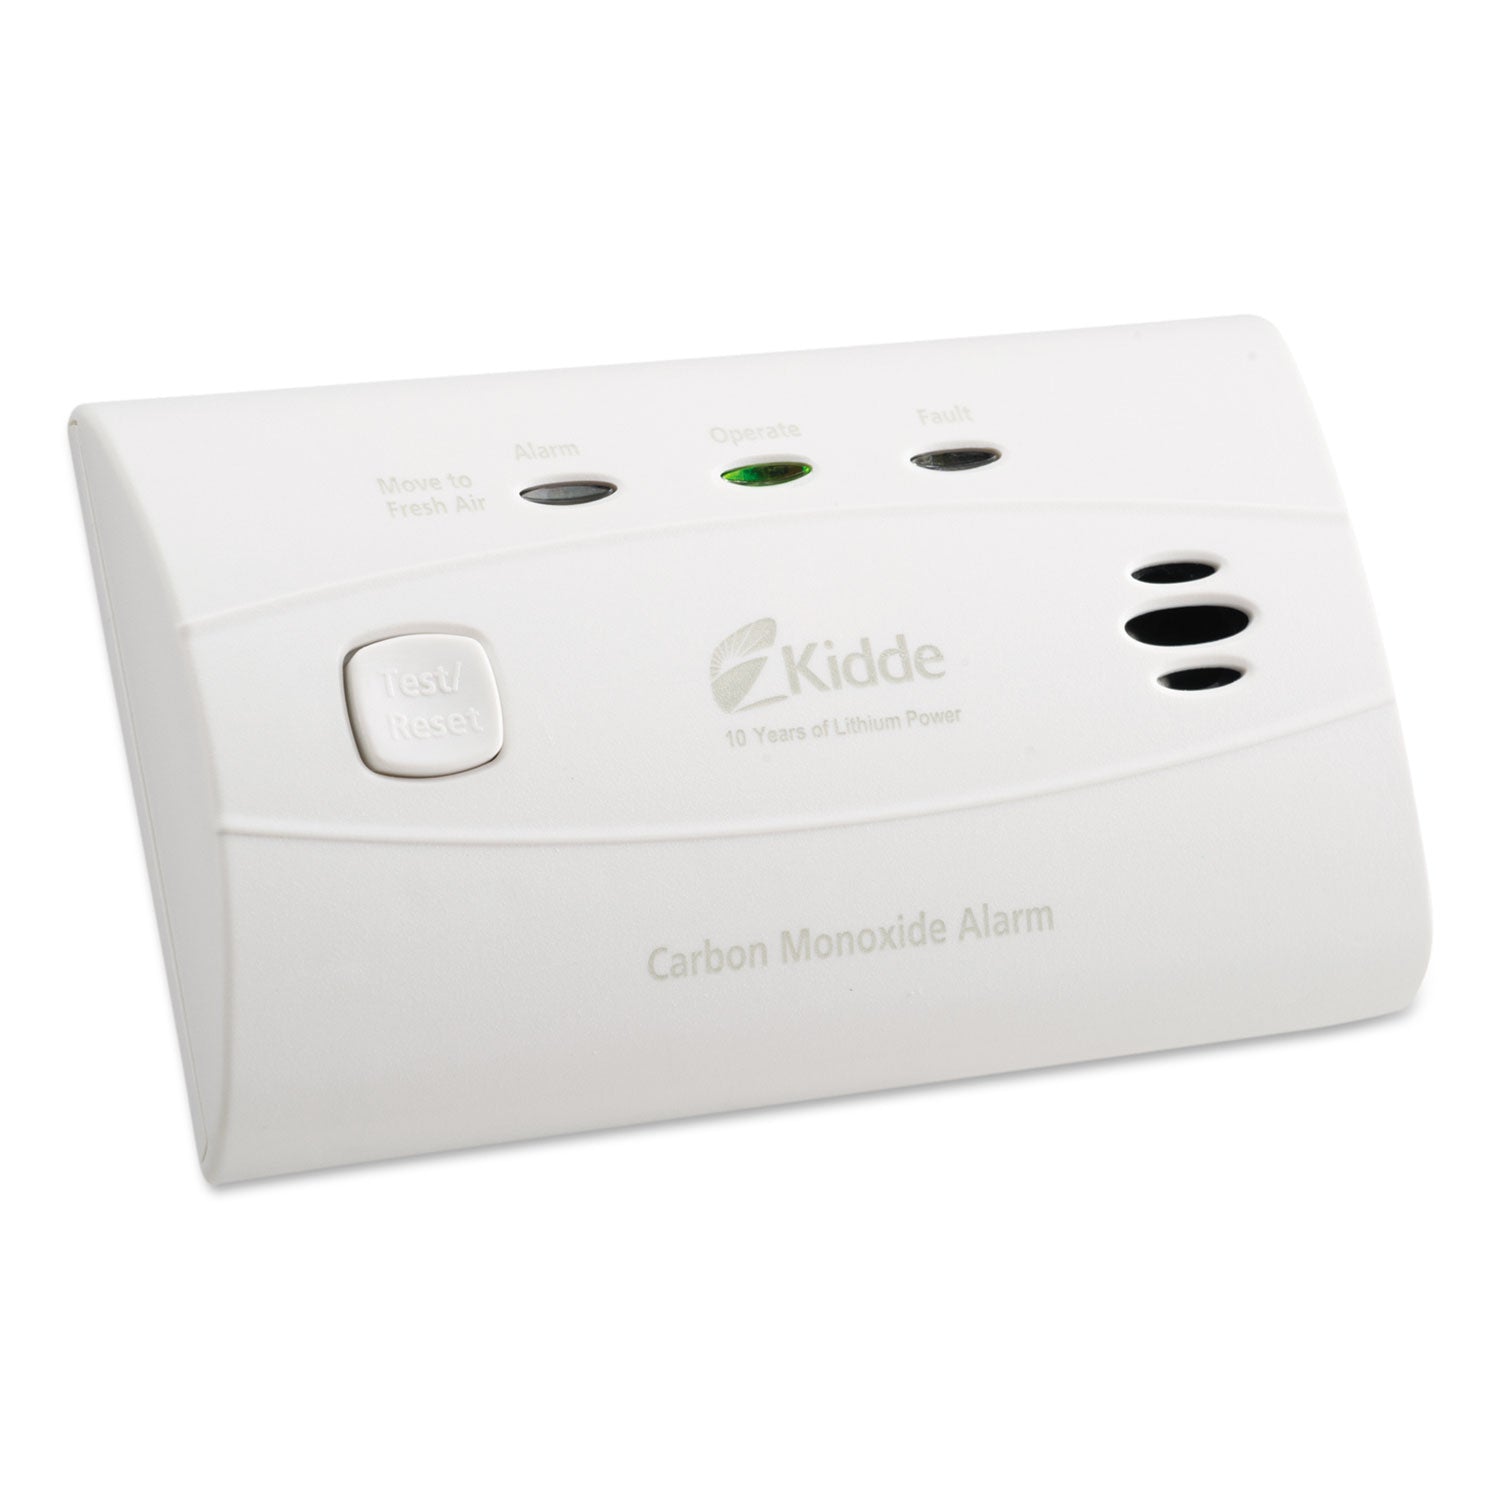 Sealed Battery Carbon Monoxide Alarm, Lithium Battery, 4.5 x 1.5 x 2.75 - 